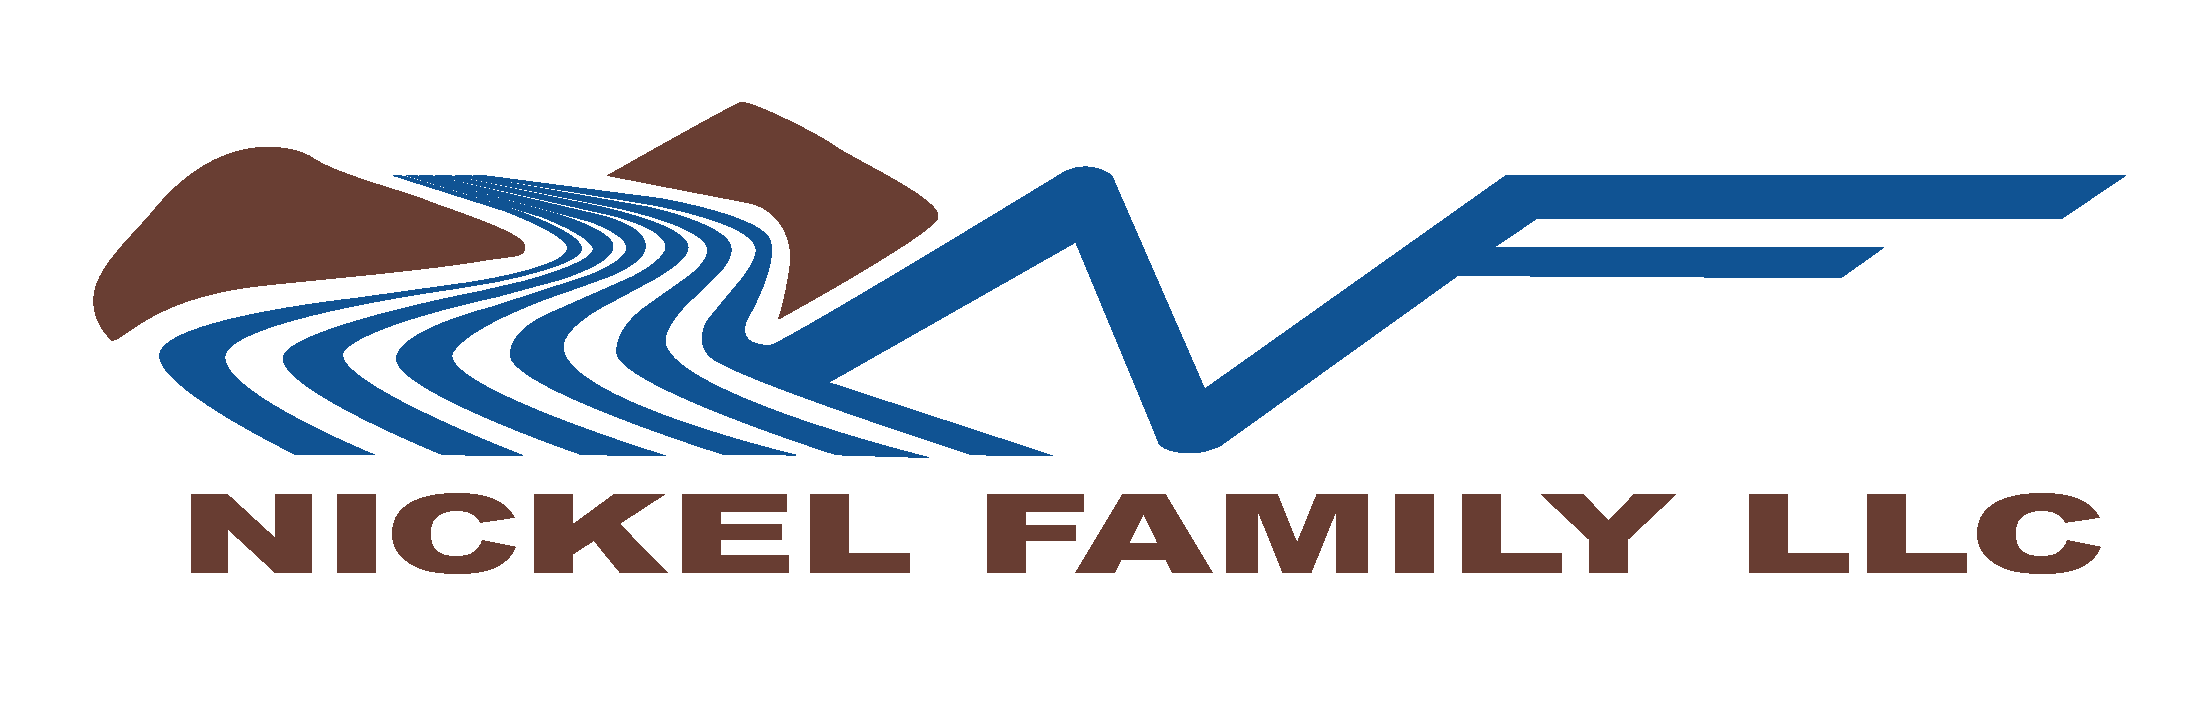 Nickel Family LLC vector Logo